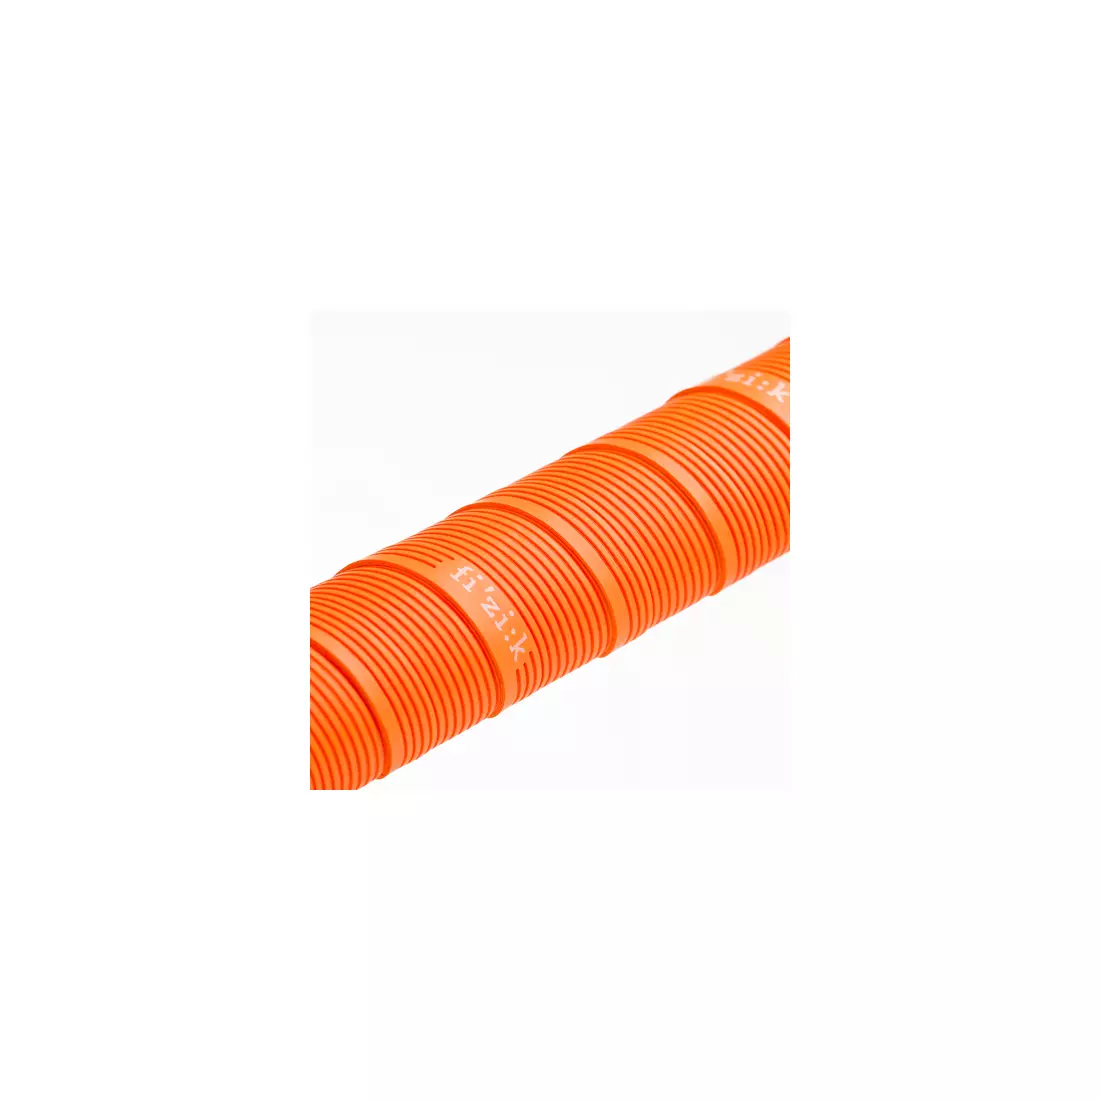 FIZIK kerékpár kormánya pakolás Vento Microtex Tacky 2mm orange BT09A00047